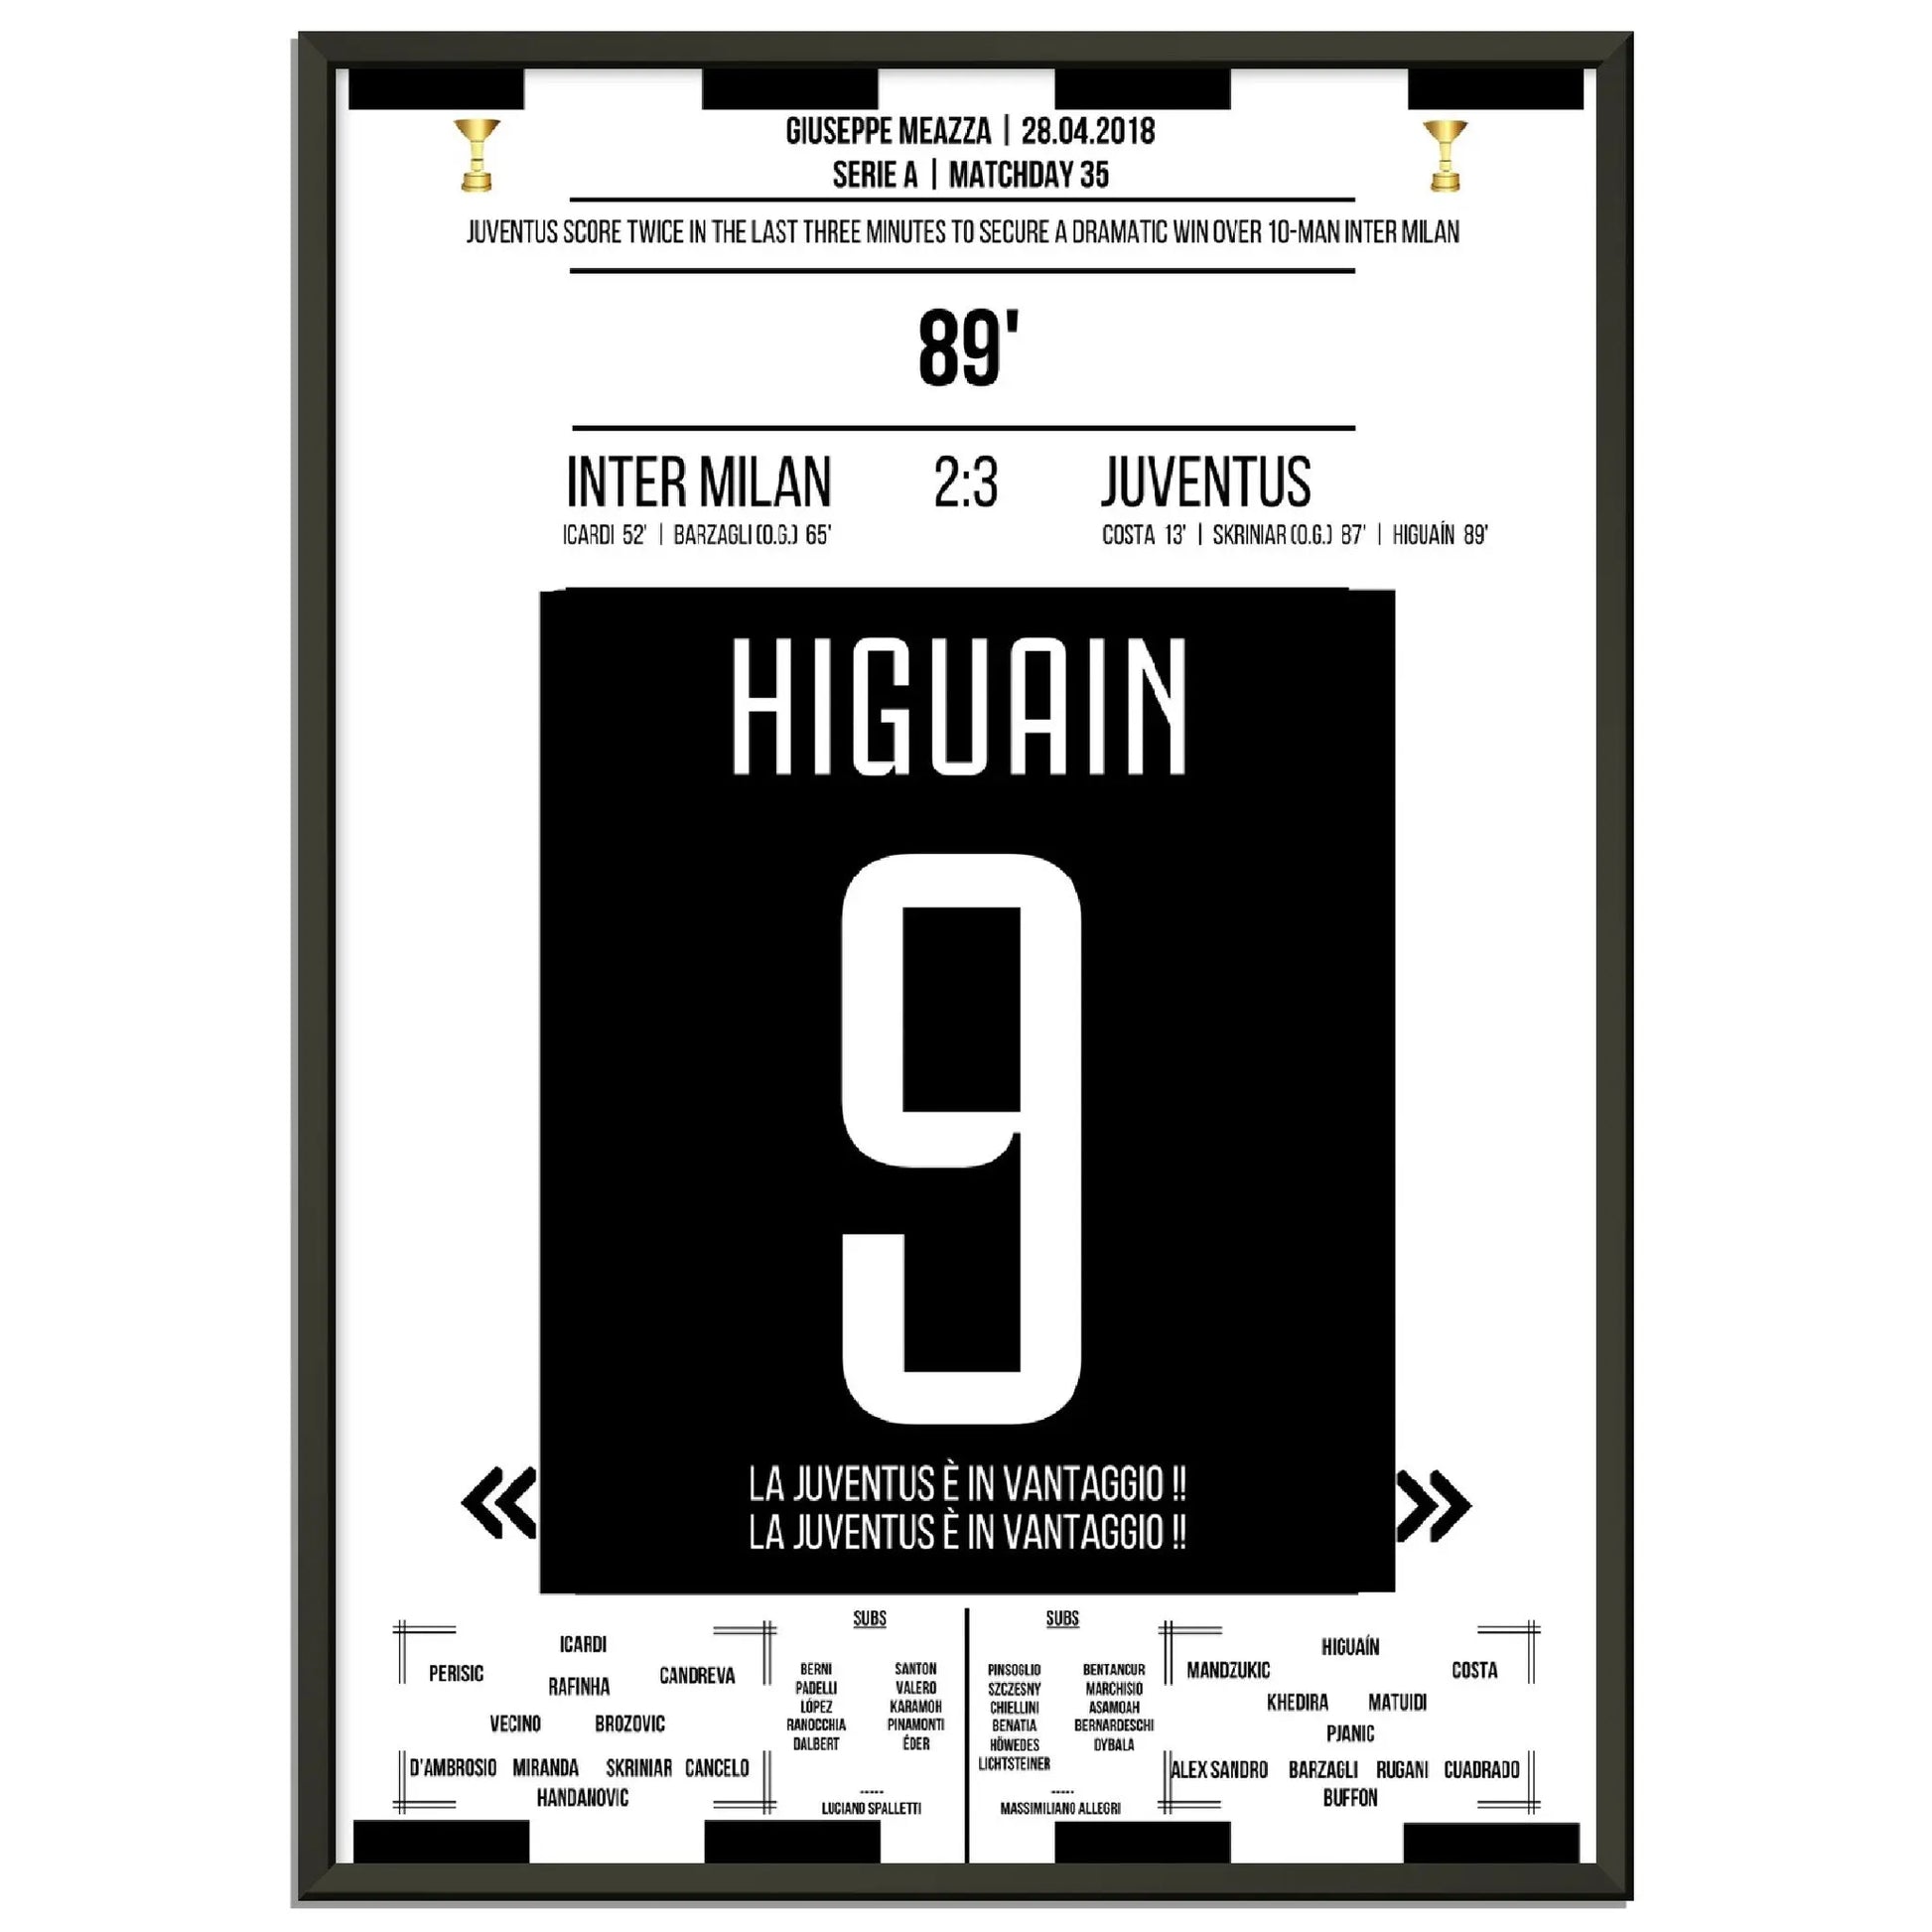 Higuain dreht das Spiel gegen Napoli auf dem Weg zum Scudetto 2018 